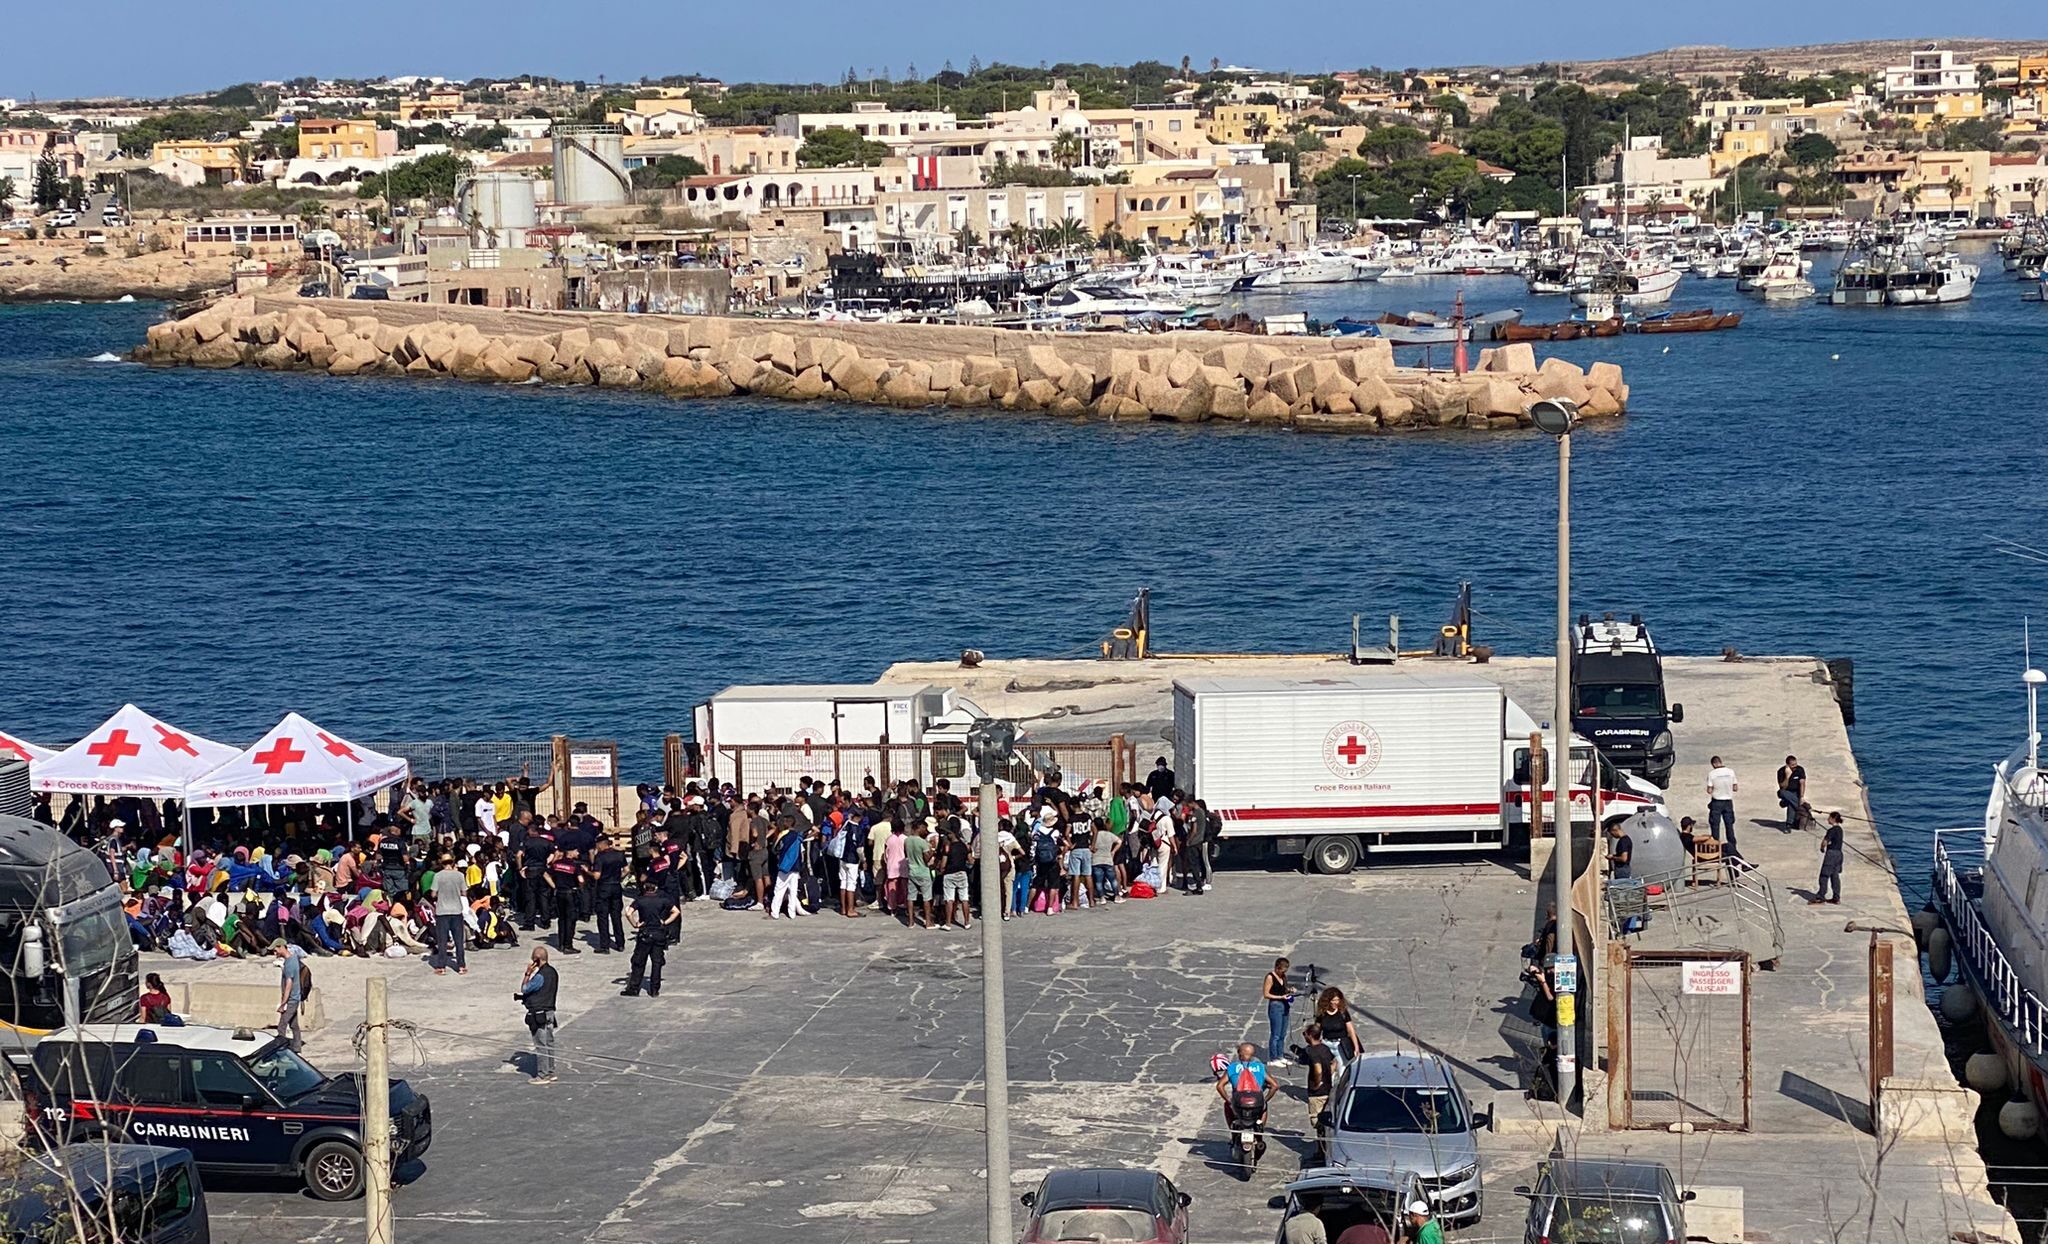 A Lampedusa proseguono gli sbarchi e resta alta la tensione. La Croce rossa: “Siamo provati dalla situazione ma non ci arrendiamo”